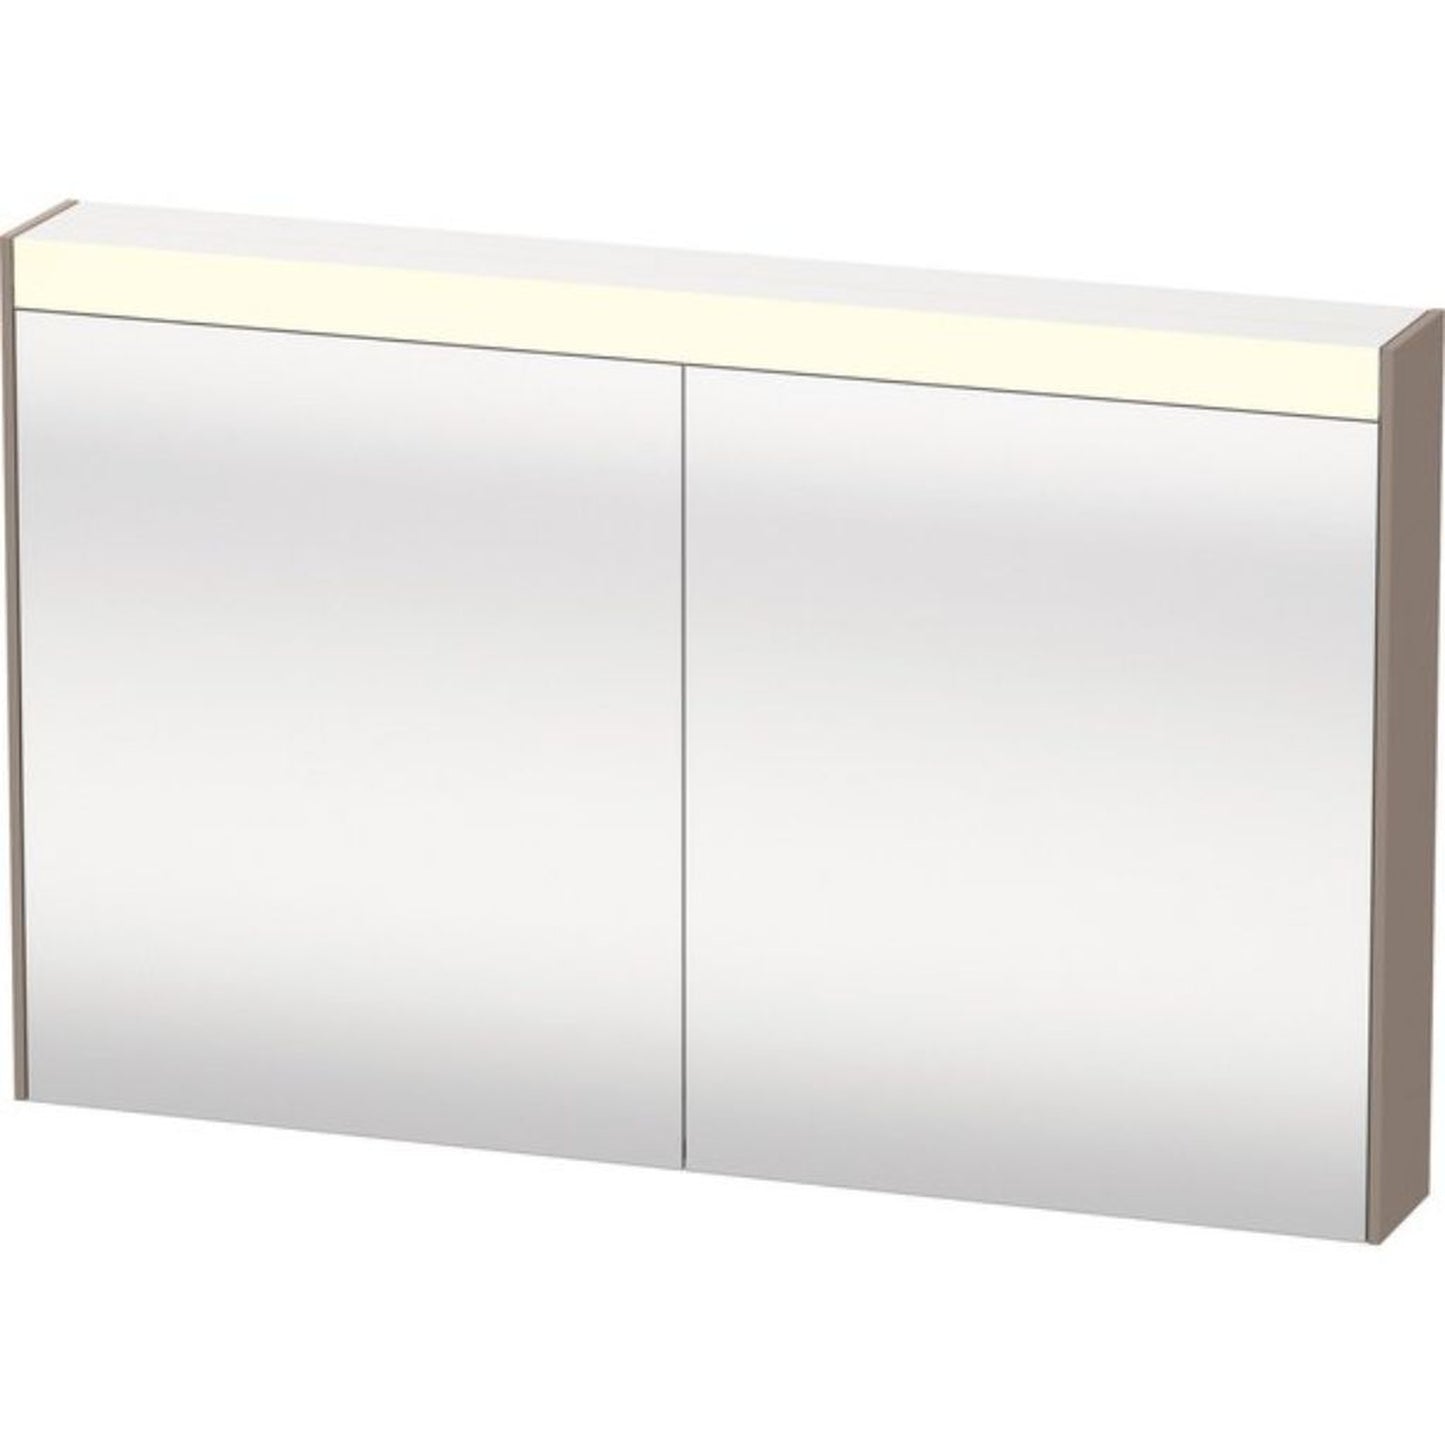 Duravit Brioso 40" x 30" x 6" Mirror Cabinet With Lighting Basalt Matt